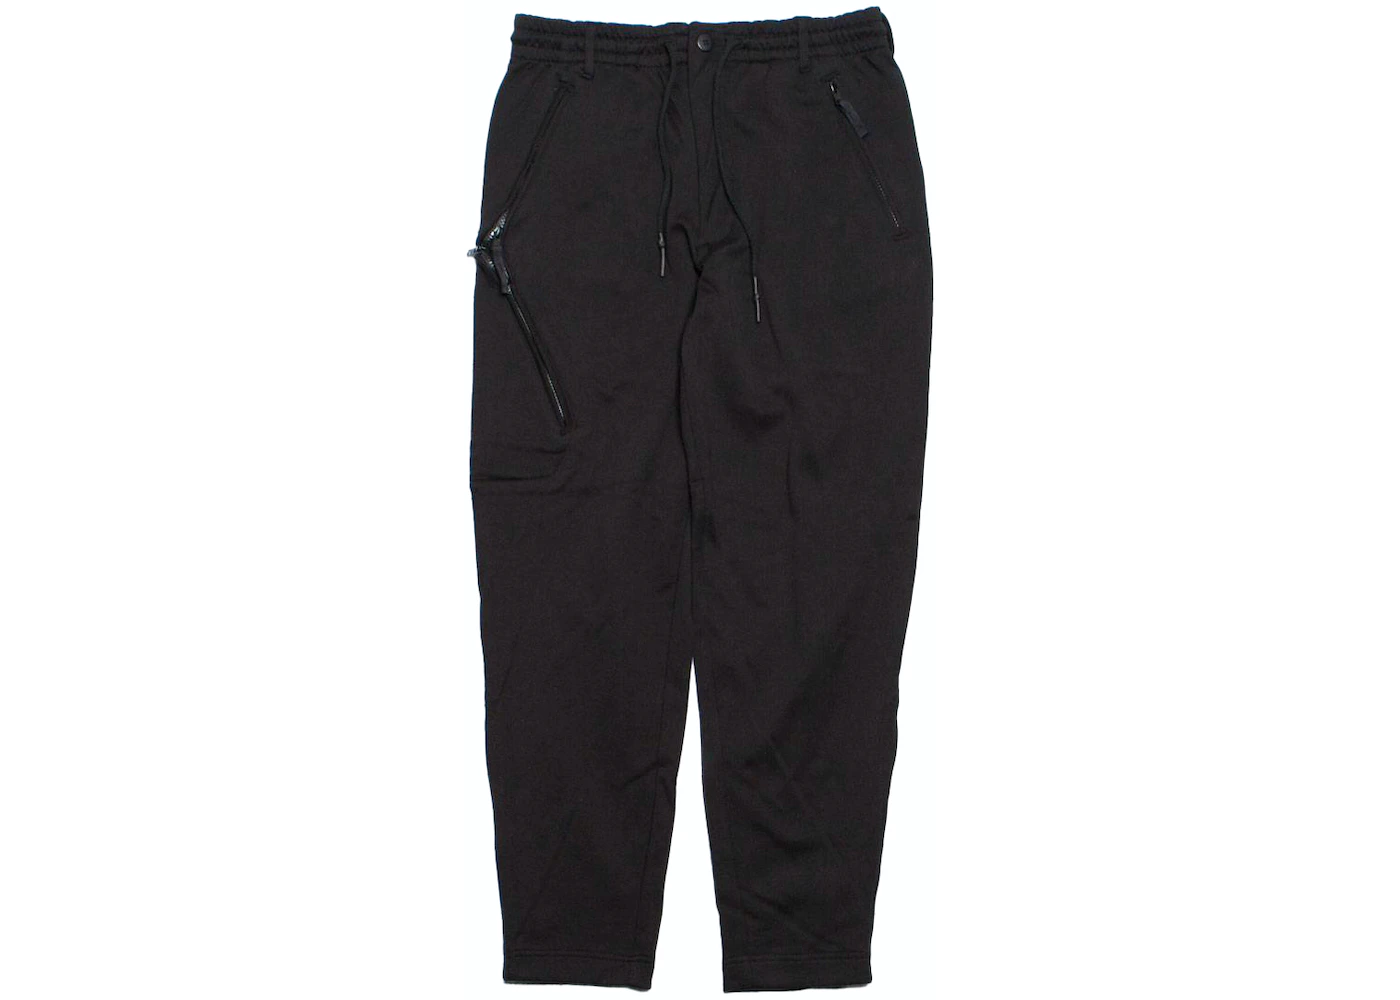 adidas Y-3 Core FT Pants Black Men's - US